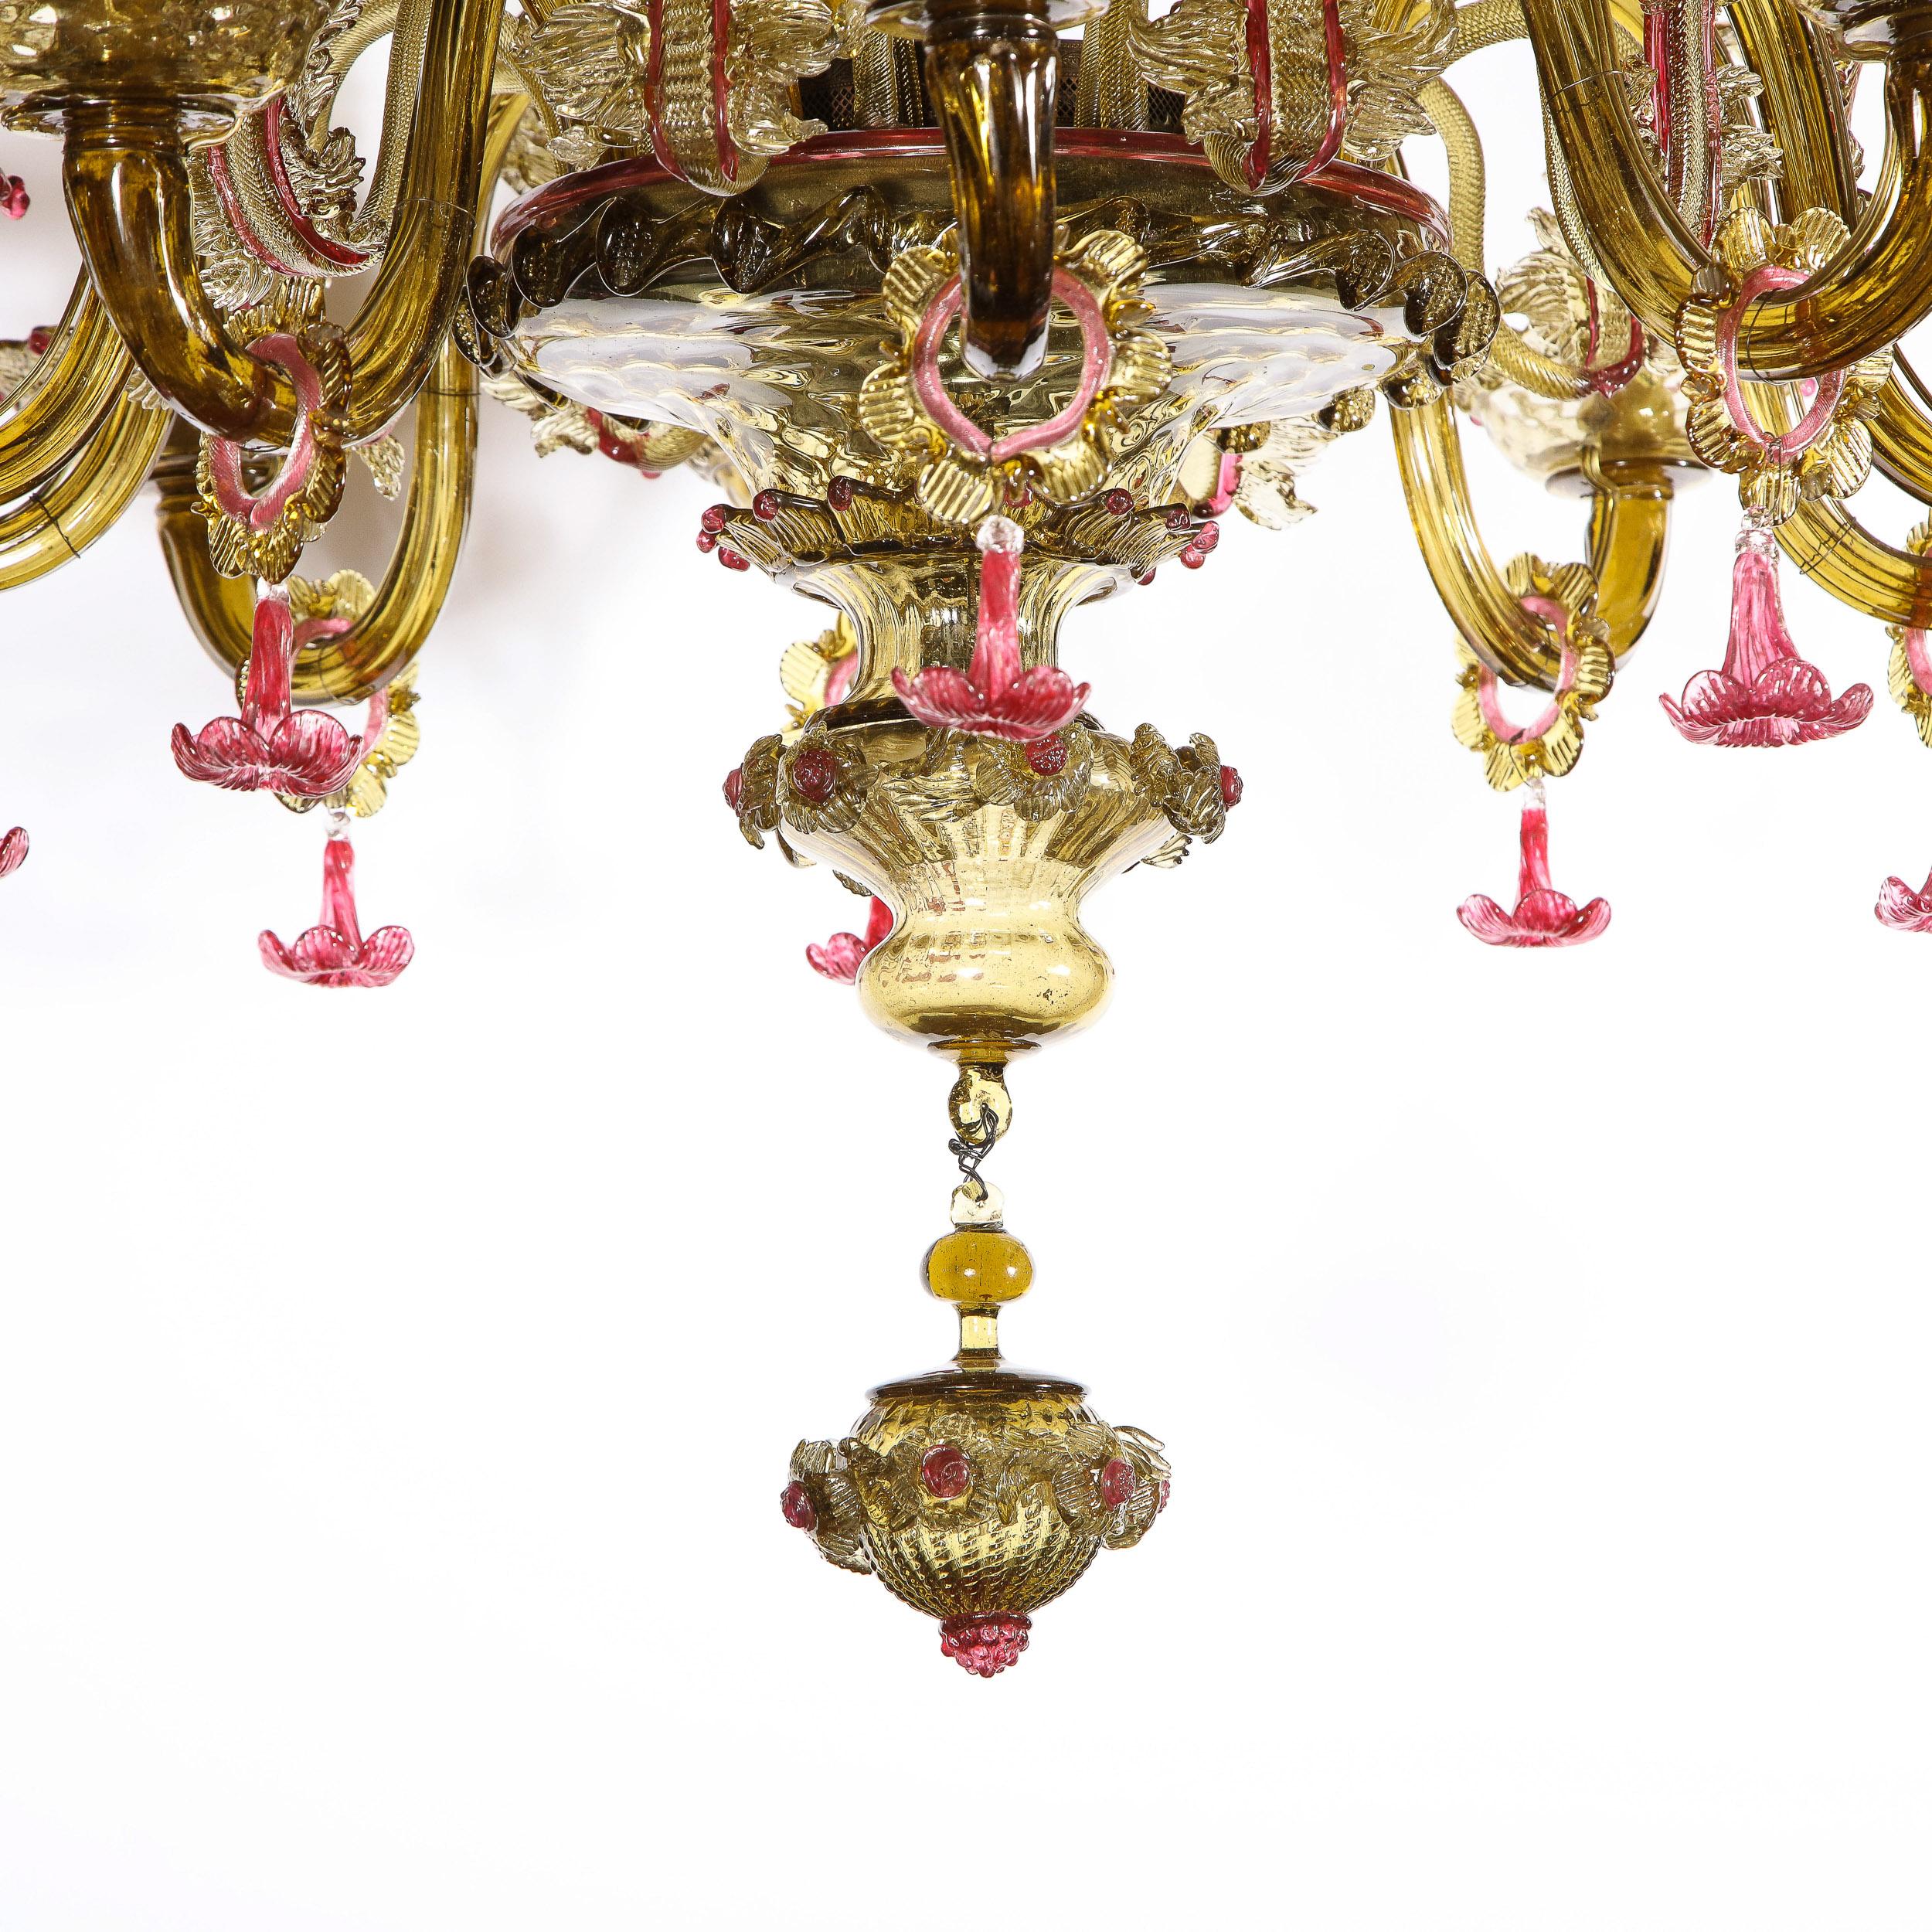 amber murano glass chandelier